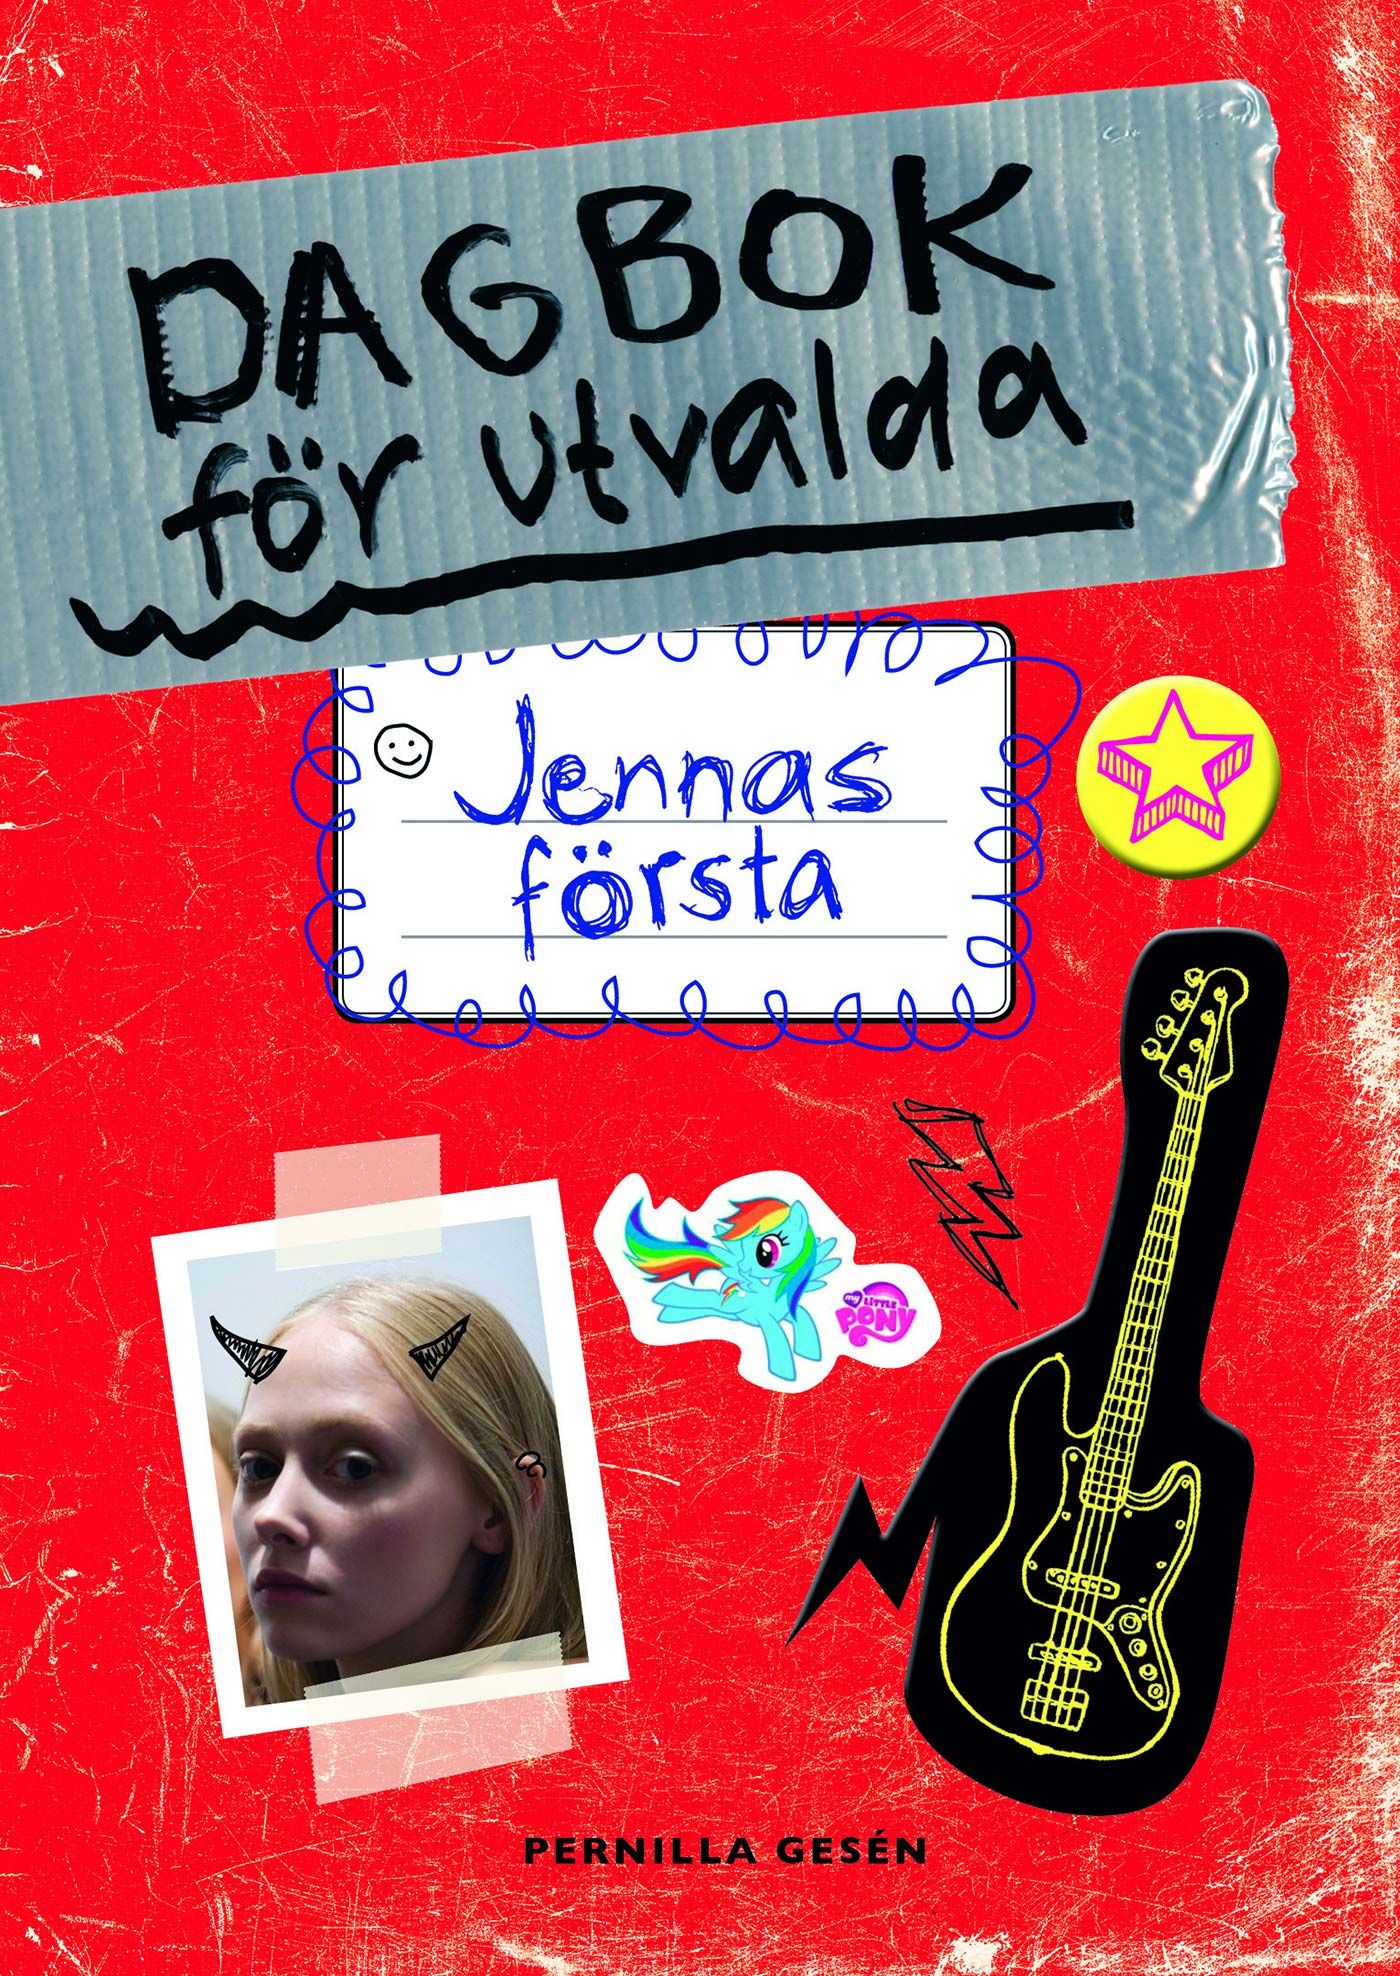 Dagbok för utvalda 1 - Jennas första, e-bok av Pernilla Gesén